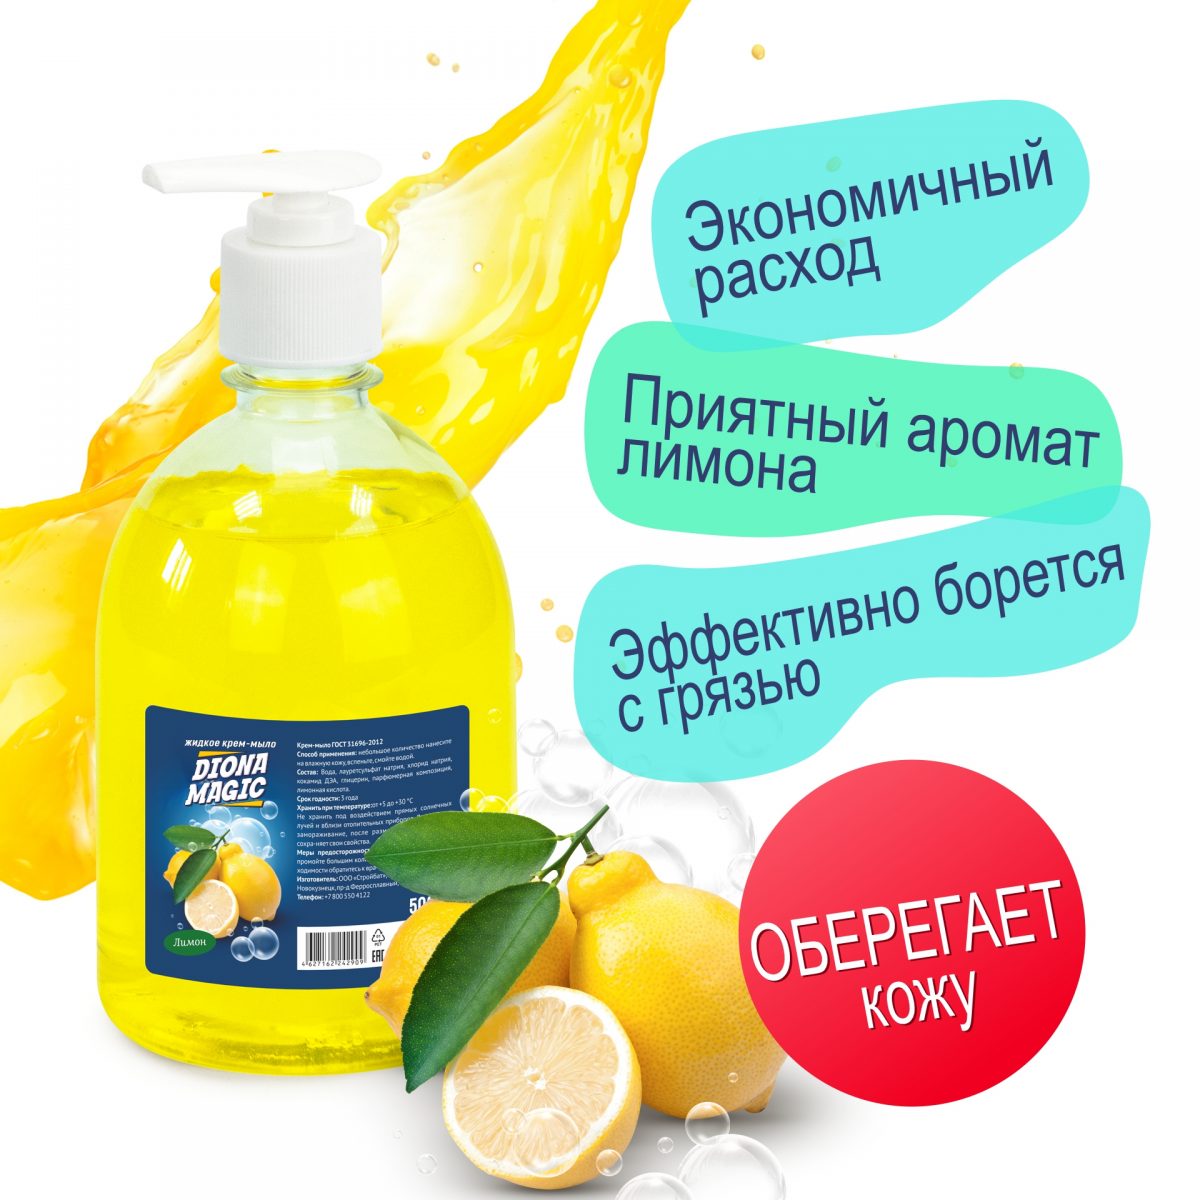 Жидкое крем-мыло DIONA MAGIC лимон ПЭТ 500мл (дозатор)